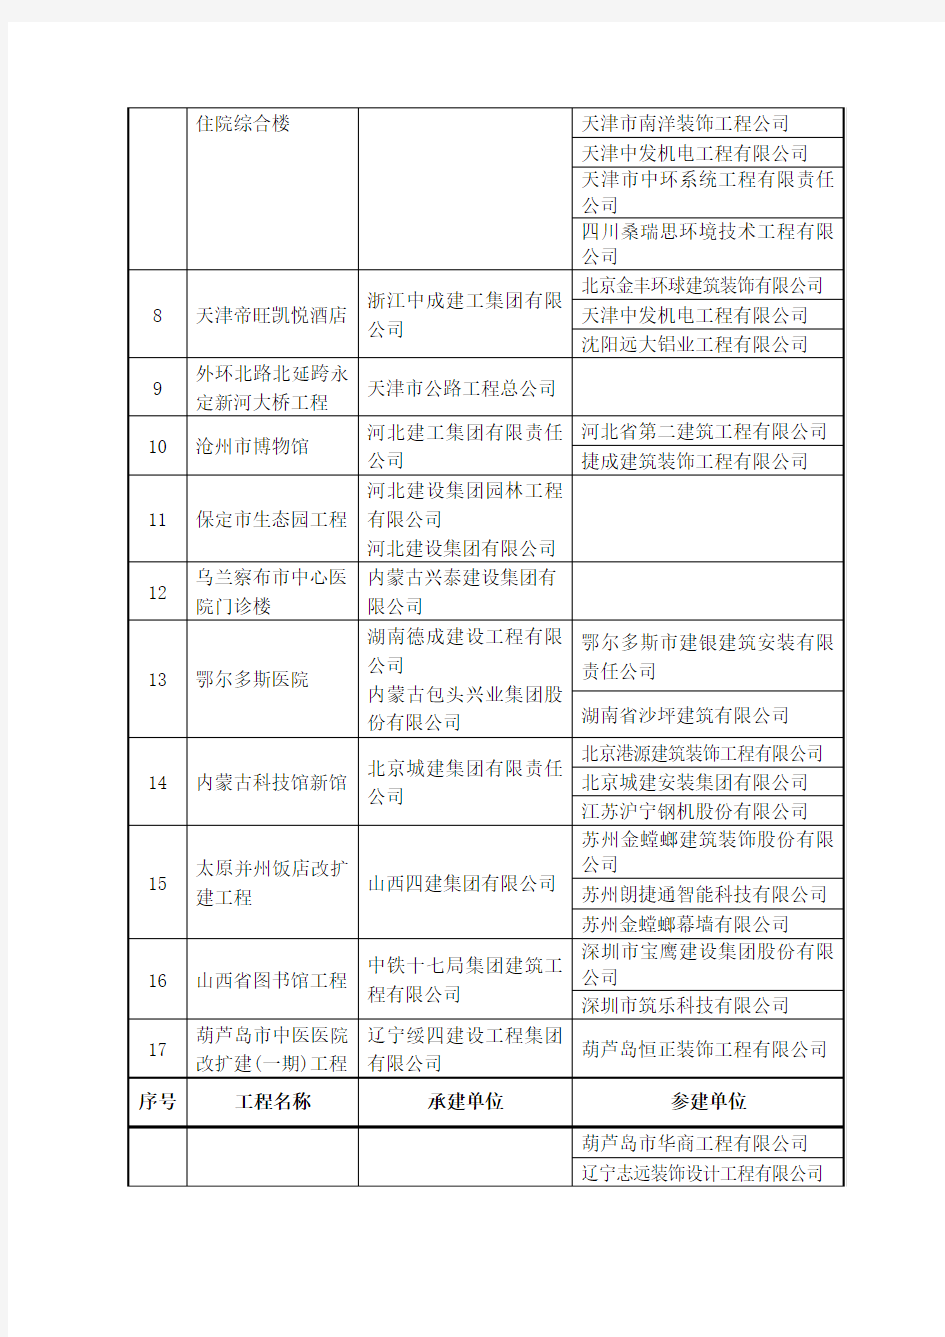 2014-2015年度中国建设工程鲁班奖-国家优质工程-第一批入选名单